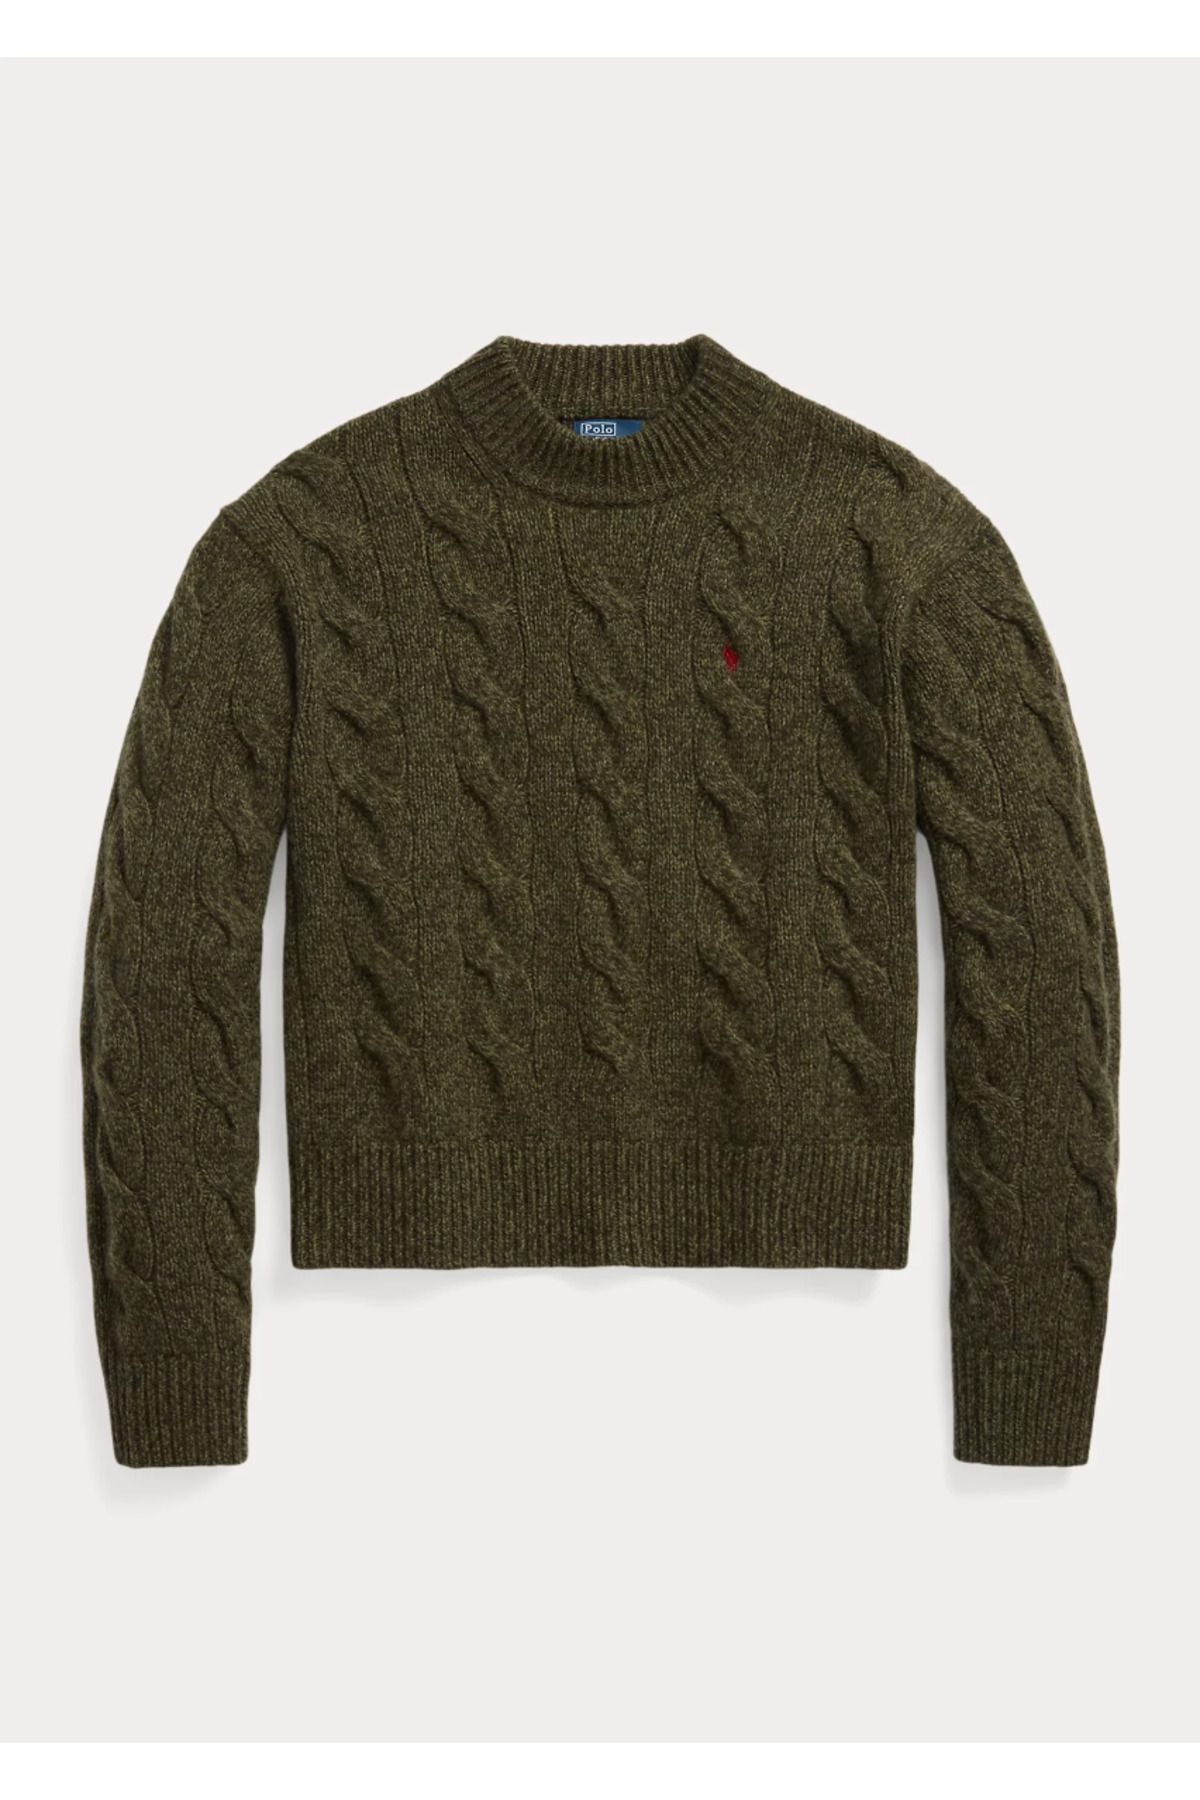 Ralph Lauren Cable Wool-Cashmere Mockneck SweaterPolo Ralph Lauren